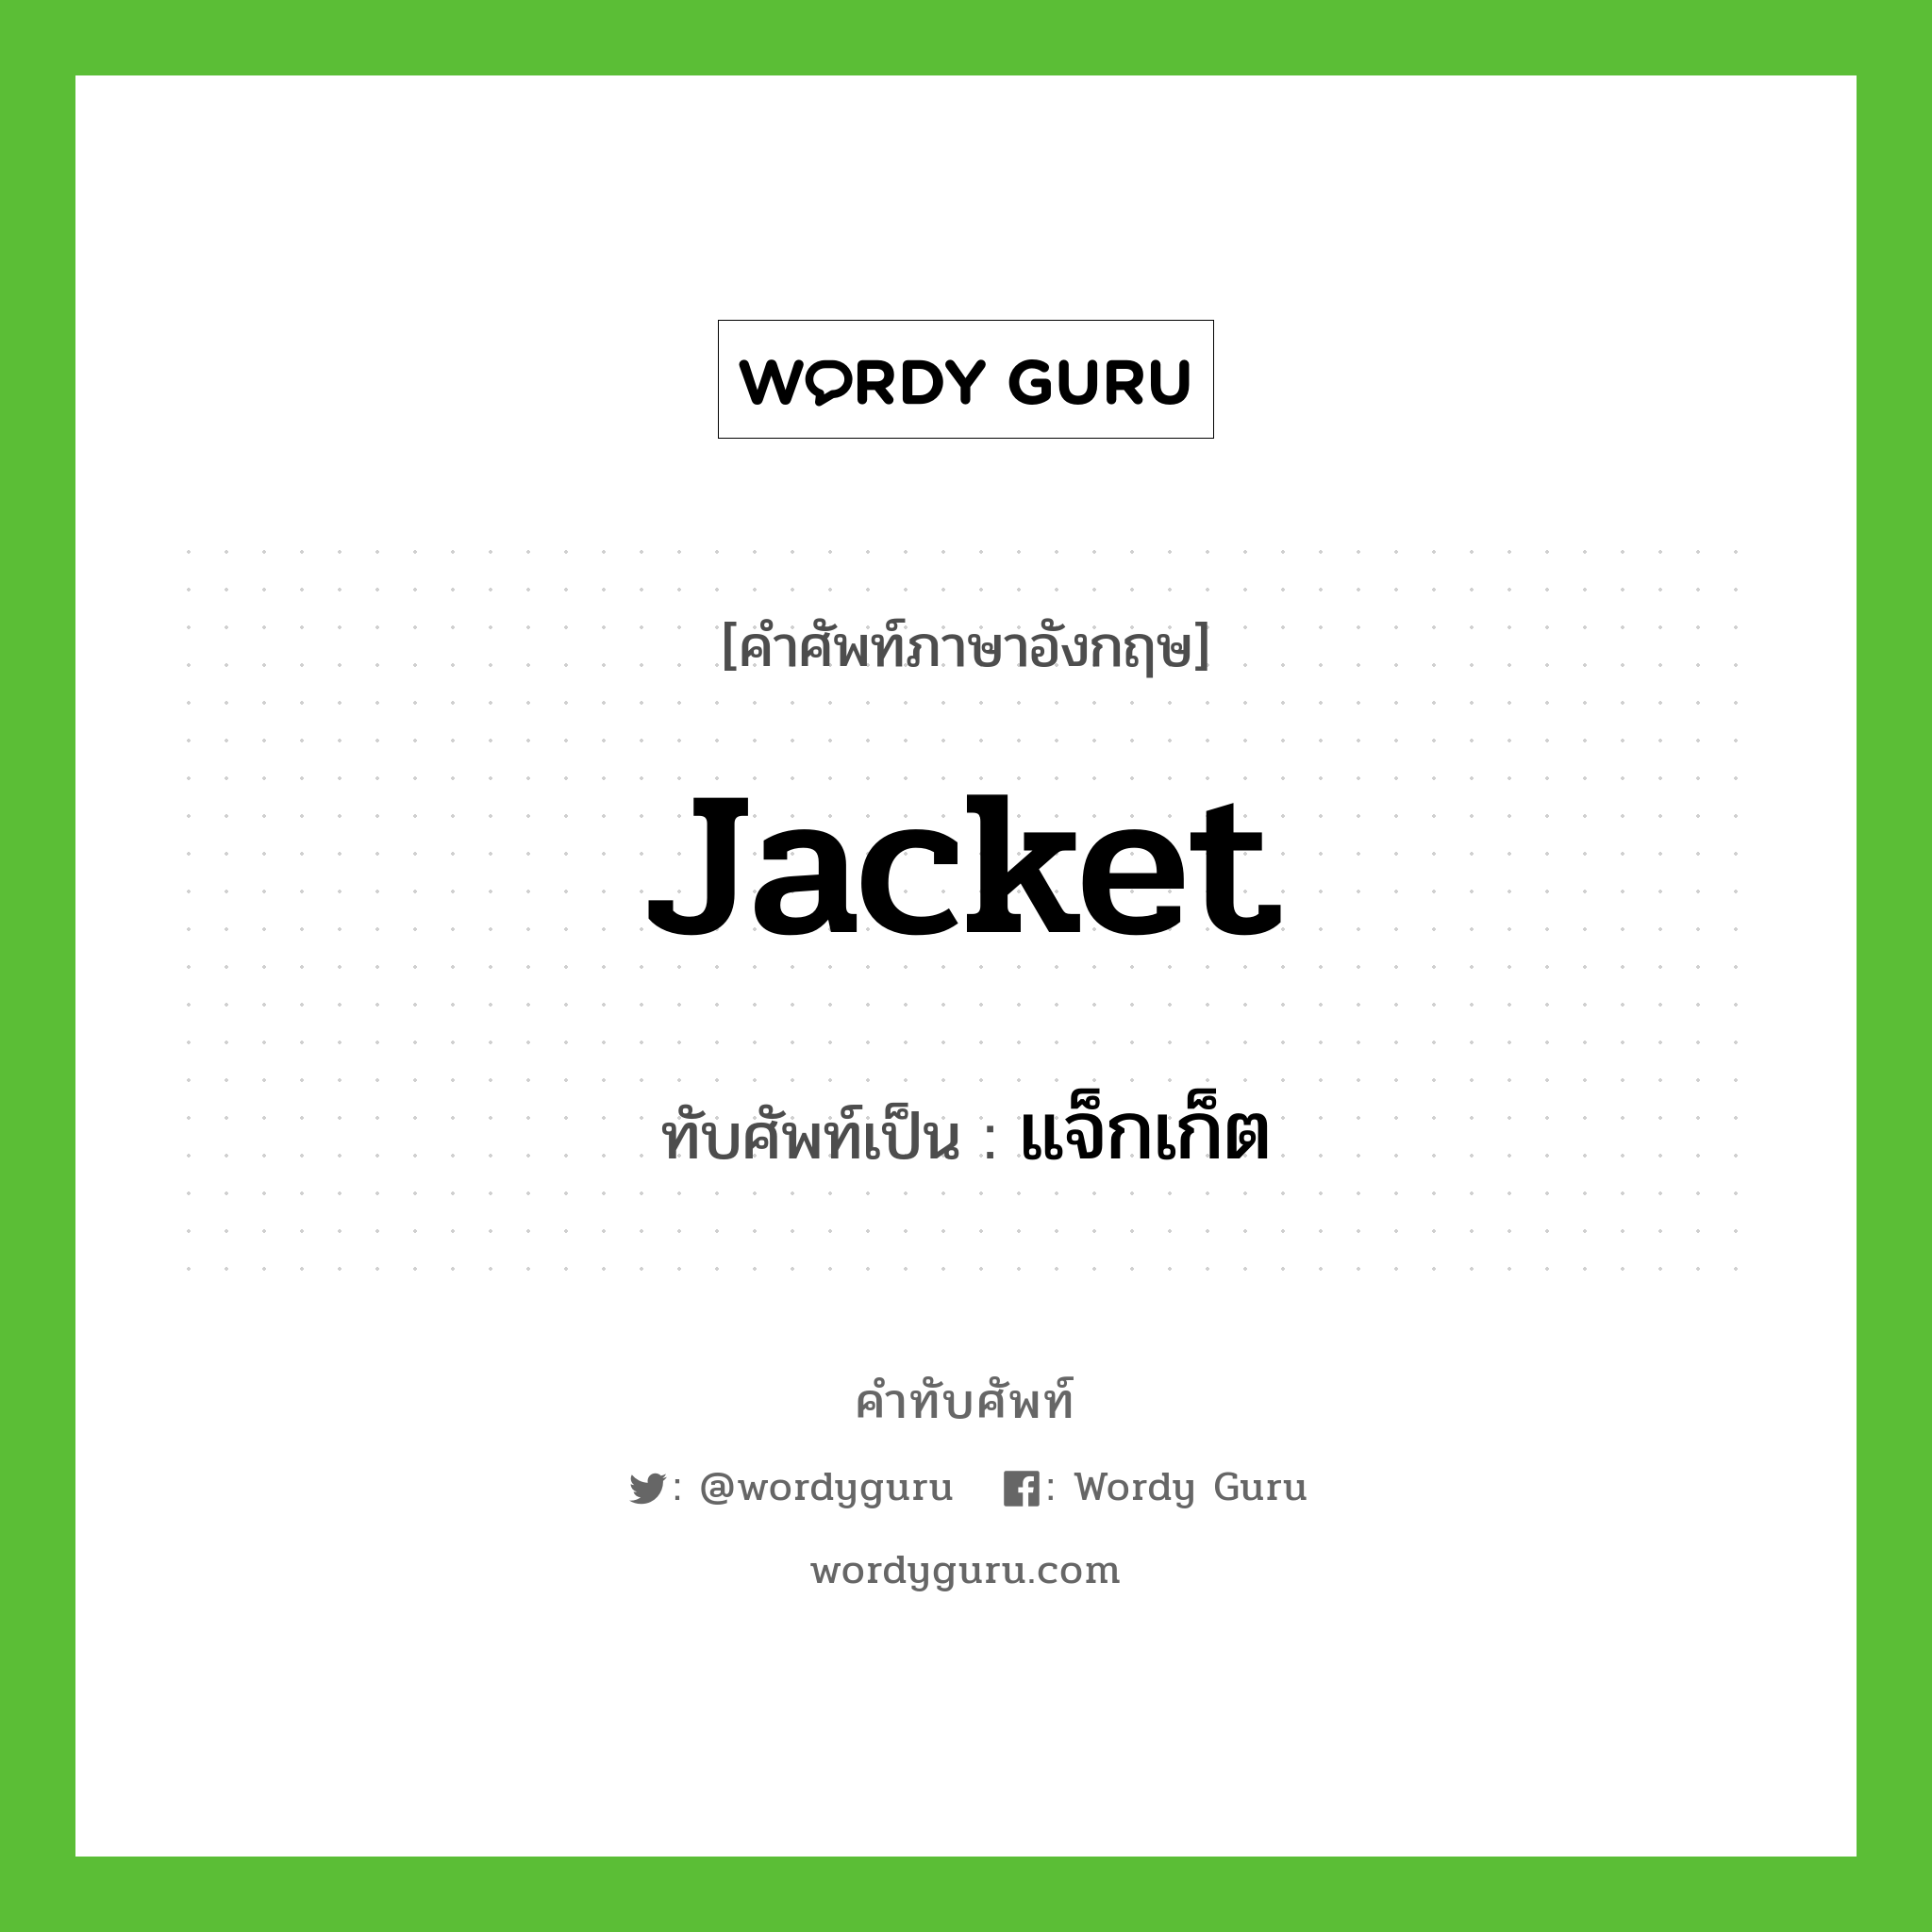 jacket เขียนเป็นคำไทยว่าอะไร?, คำศัพท์ภาษาอังกฤษ jacket ทับศัพท์เป็น แจ็กเก็ต